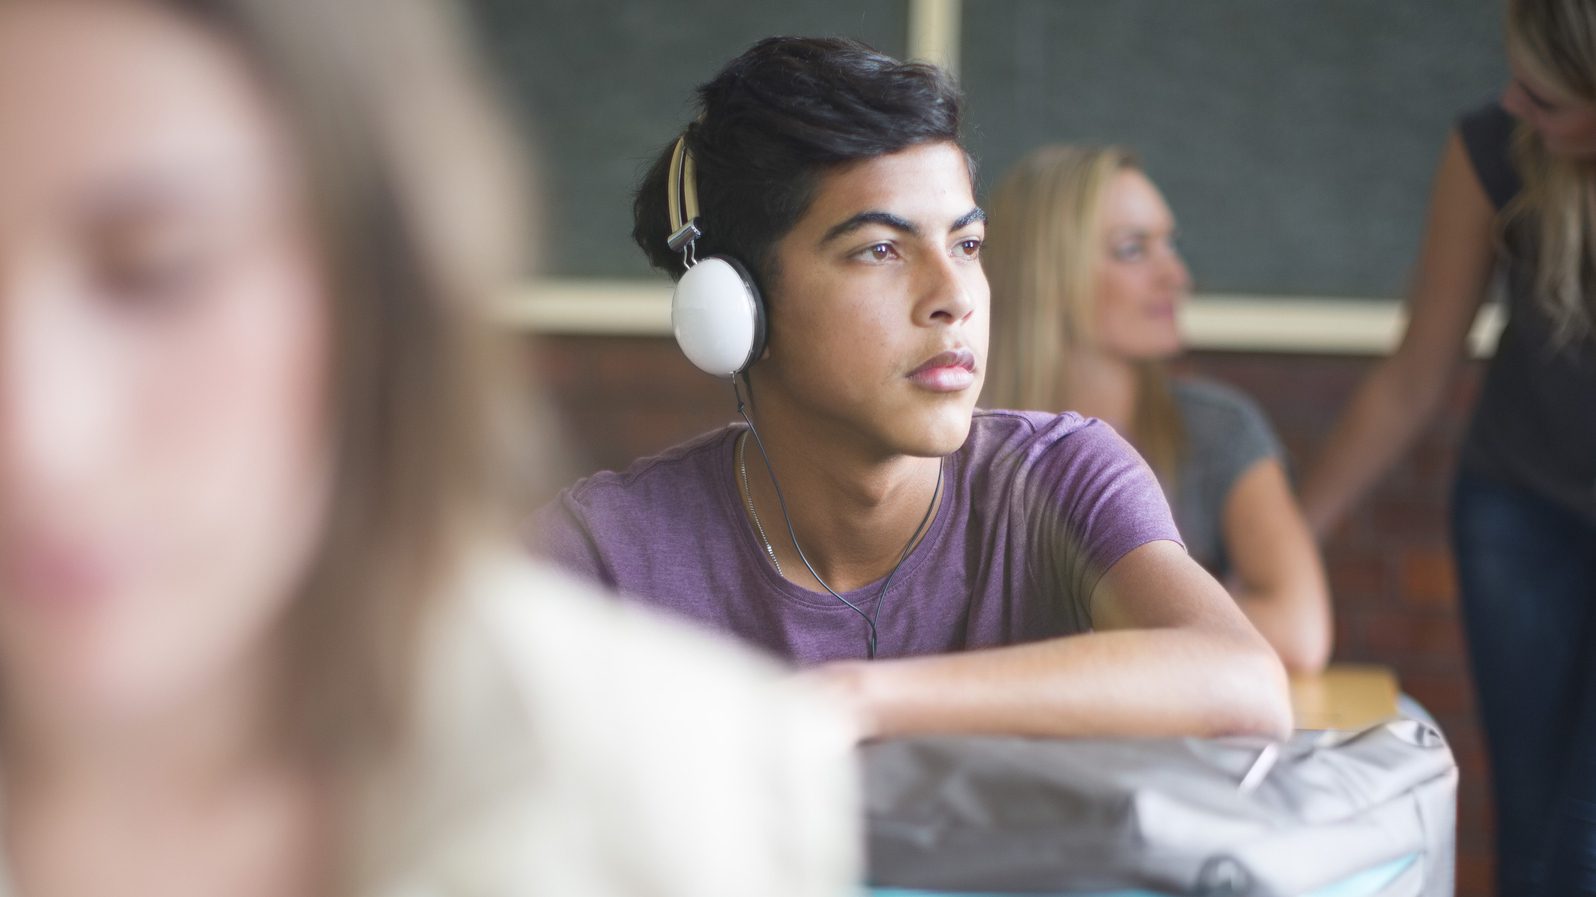 Student wearing headphones in classroom